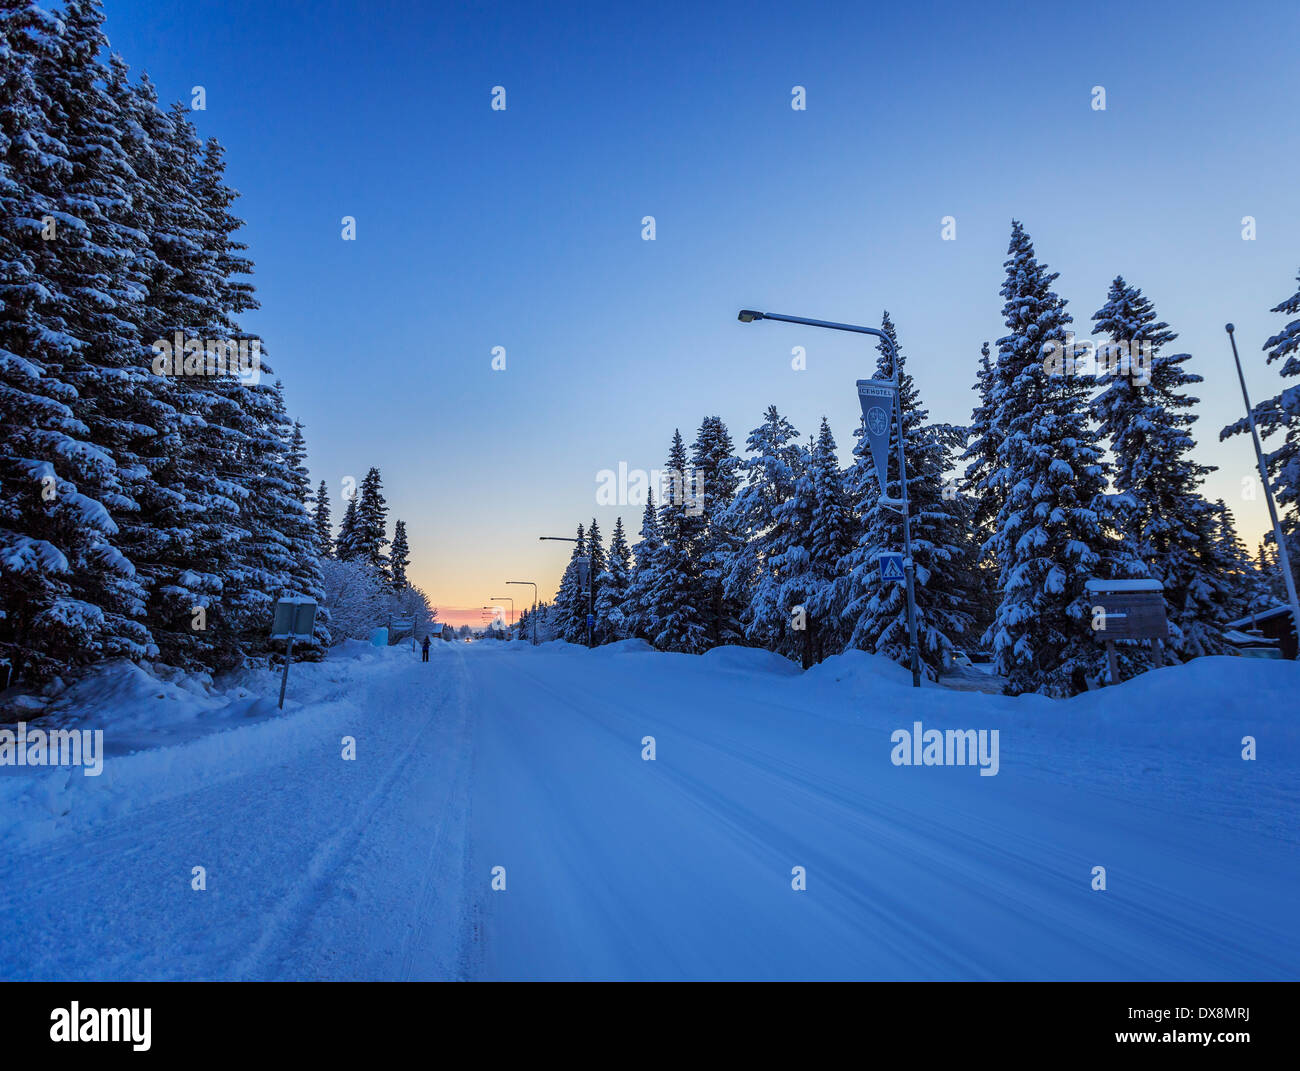 Arbres couverts de neige à des températures extrêmement froides, Laponie, Suède Banque D'Images